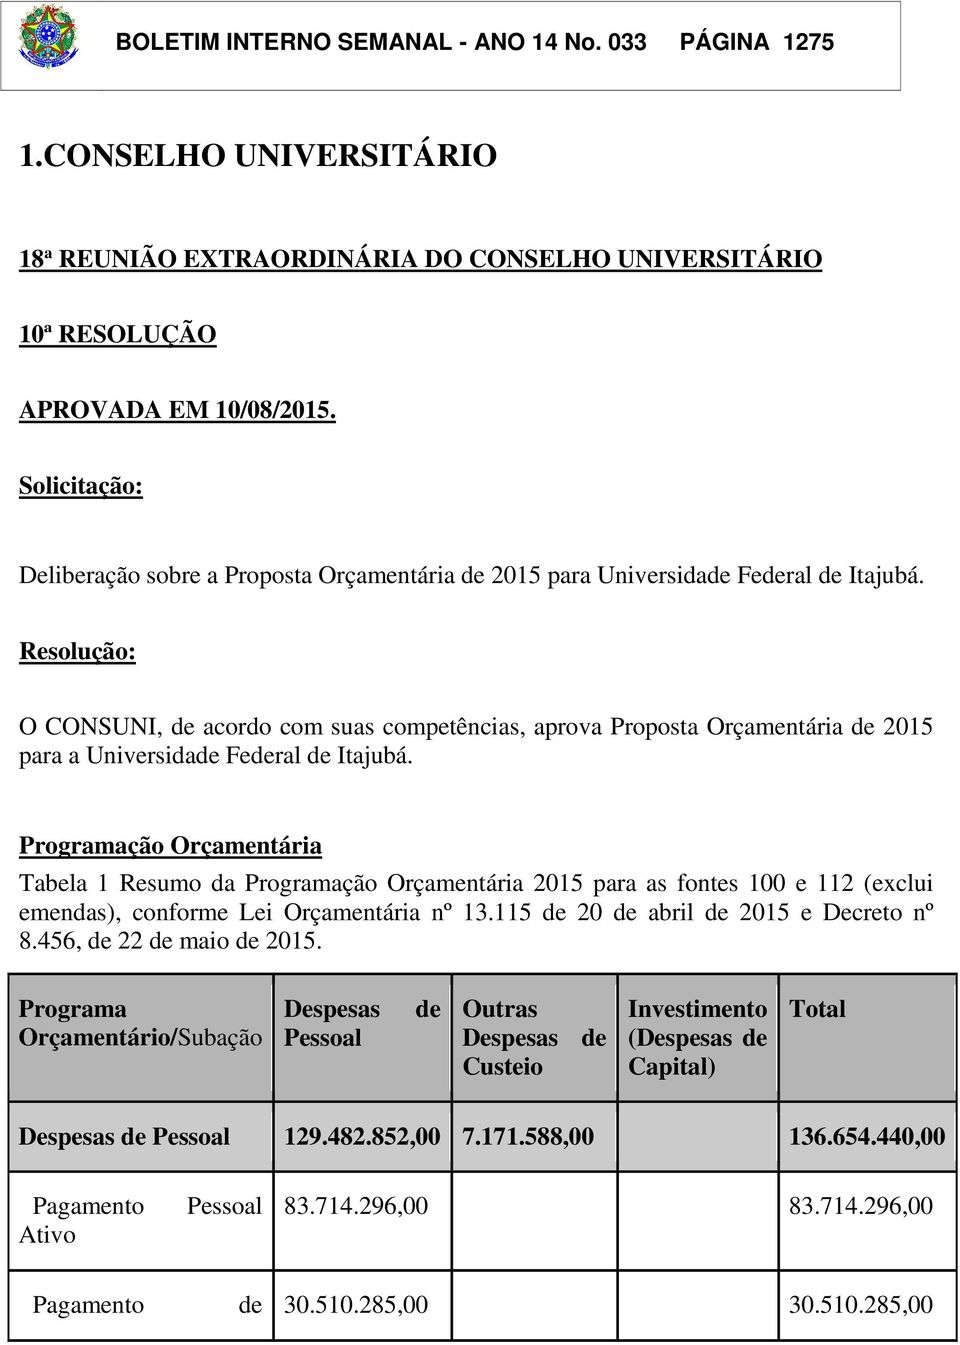 Resolução: O CONSUNI, de acordo com suas competências, aprova Proposta Orçamentária de 2015 para a Universidade Federal de Itajubá.